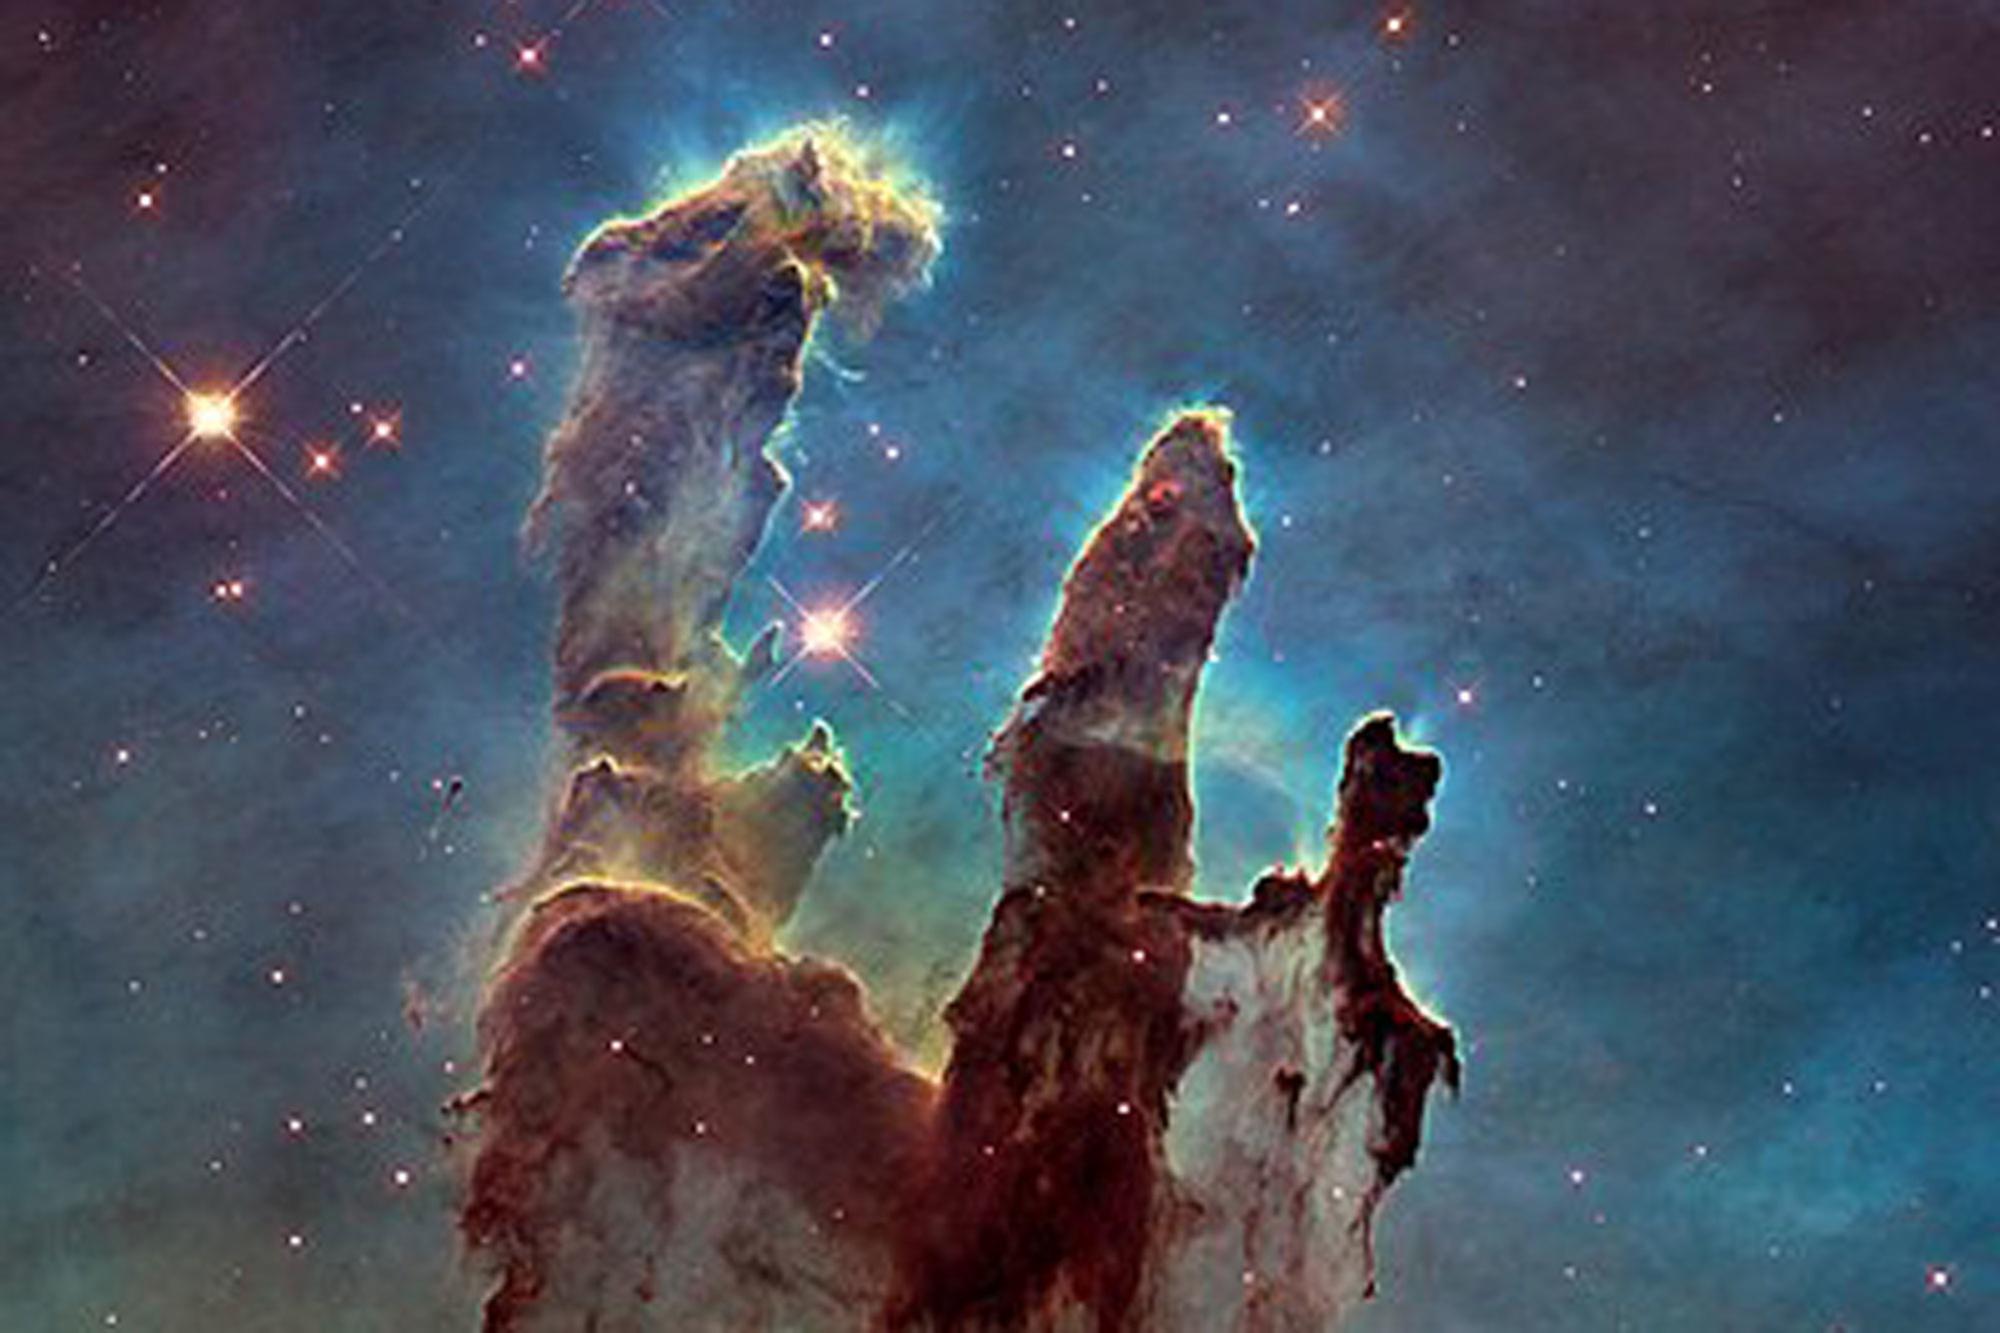 Deze legendarische foto van de Pilaren der Creatie, een deel van de Adelaarsnevel, werd genomen door Hubble in 1995.